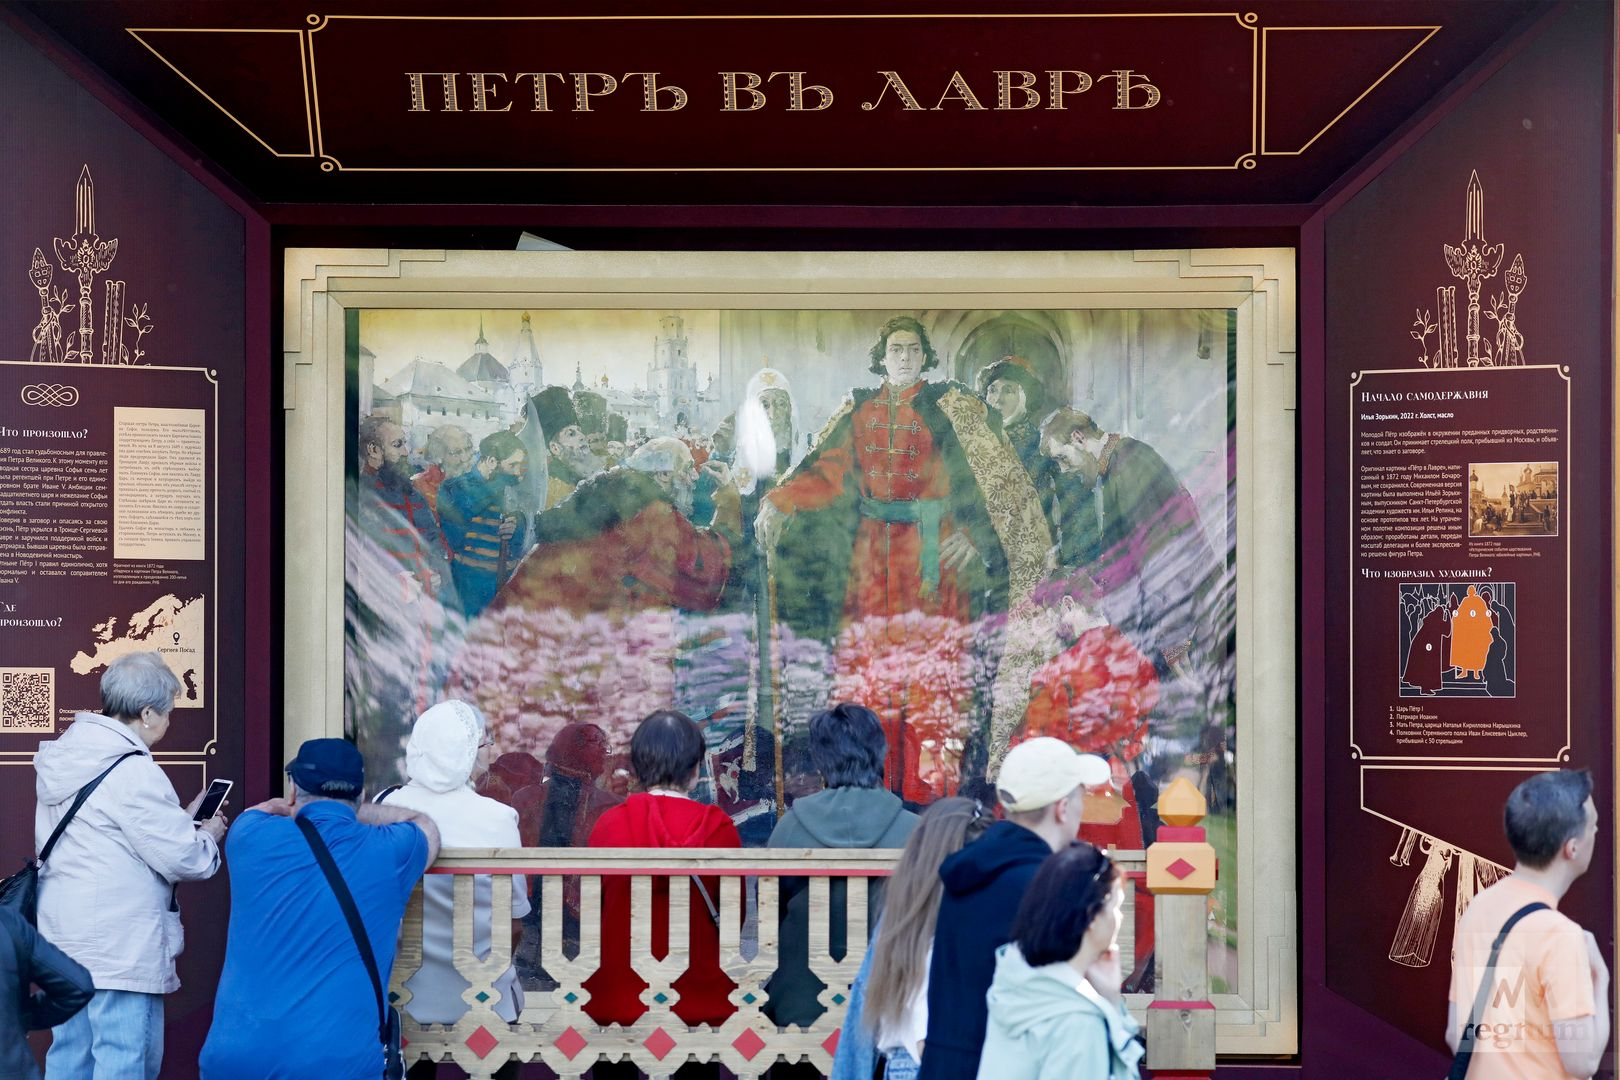 Блог елены исхаковой
все музеи картин в санкт-петербурге: полный список